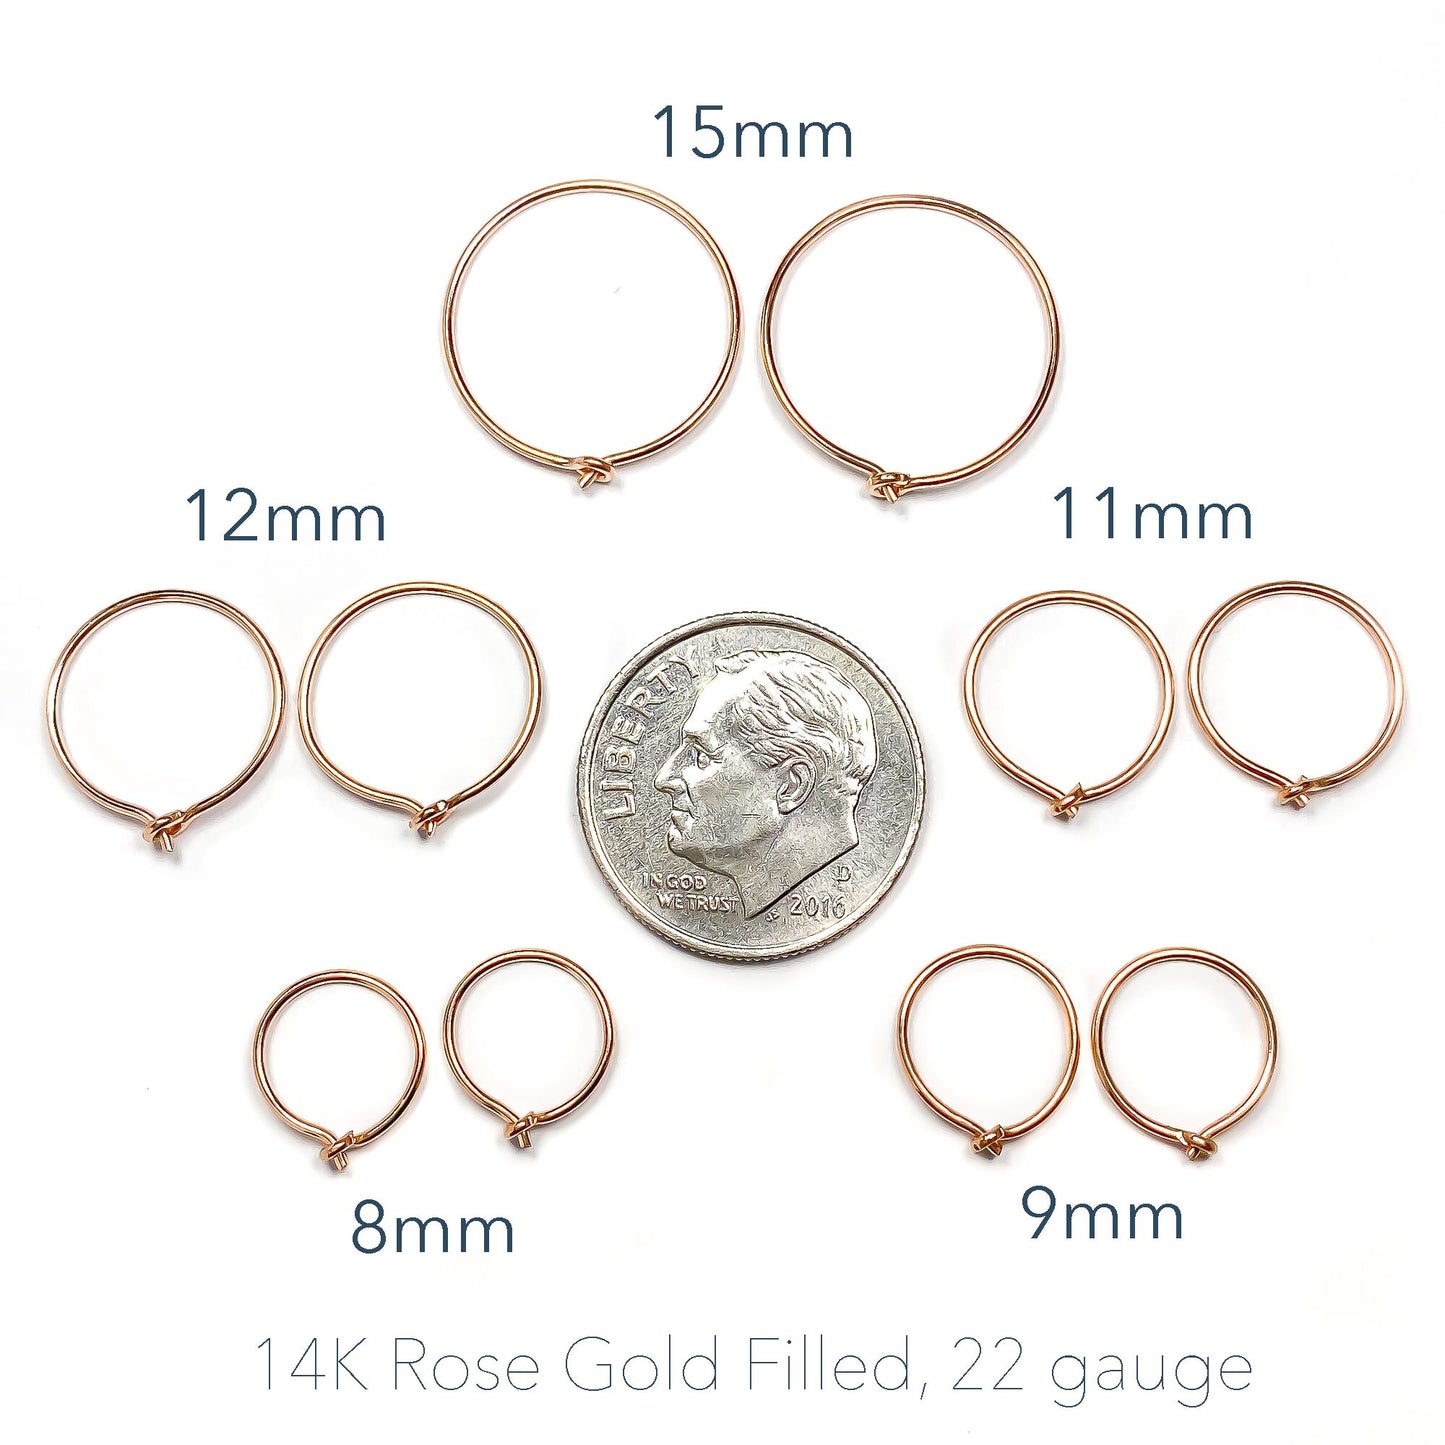 14K Rose Gold Filled Eyelet Hoops, 11mm